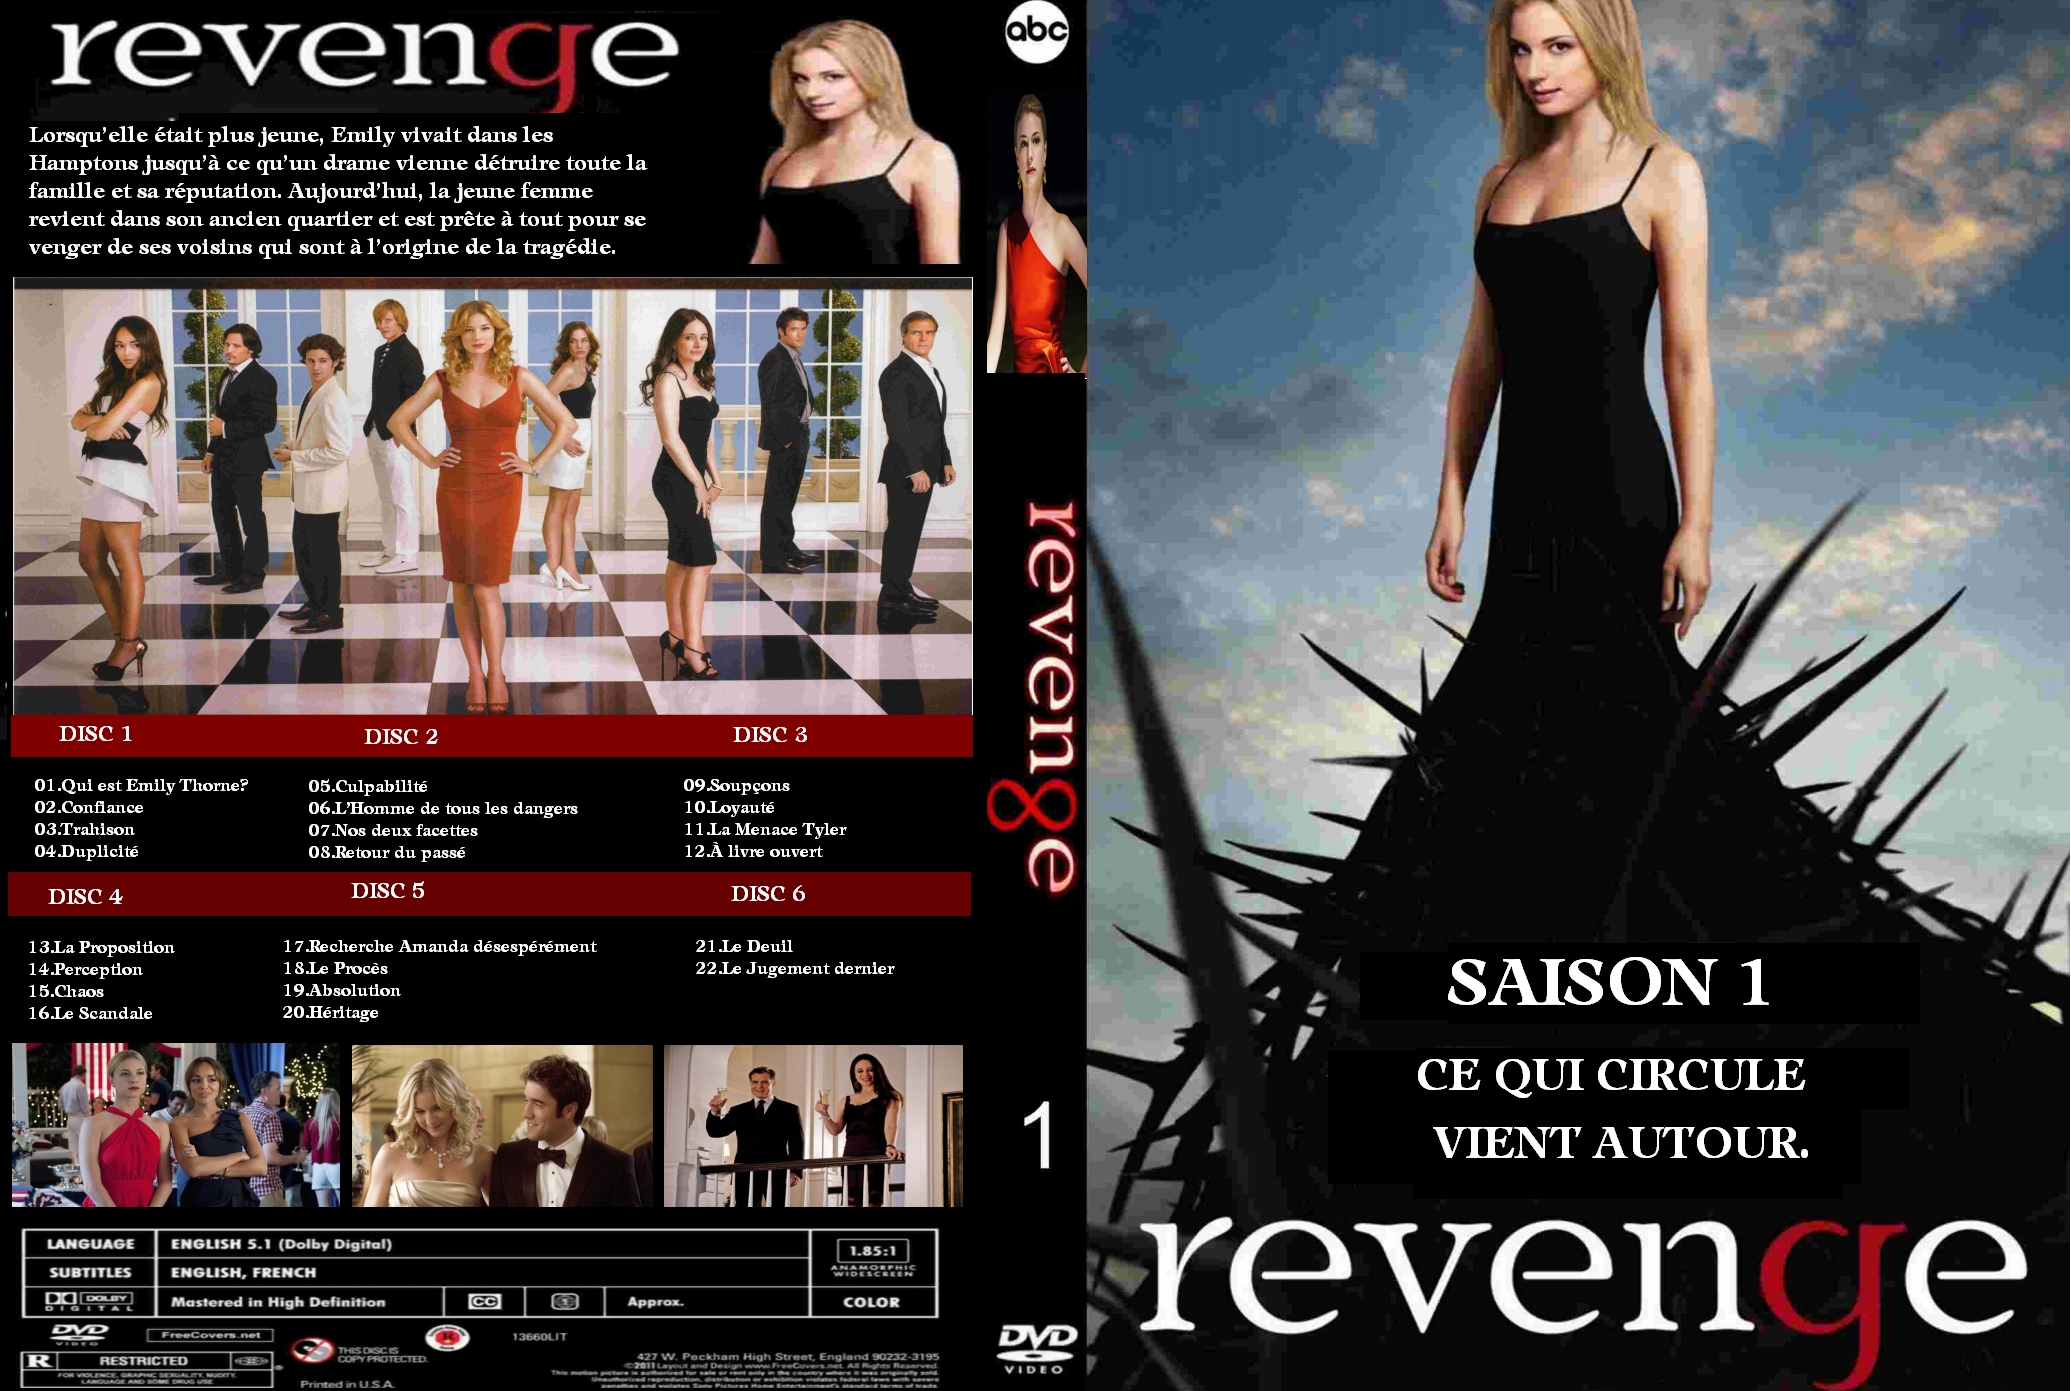 Jaquette DVD Revenge saison 1 custom